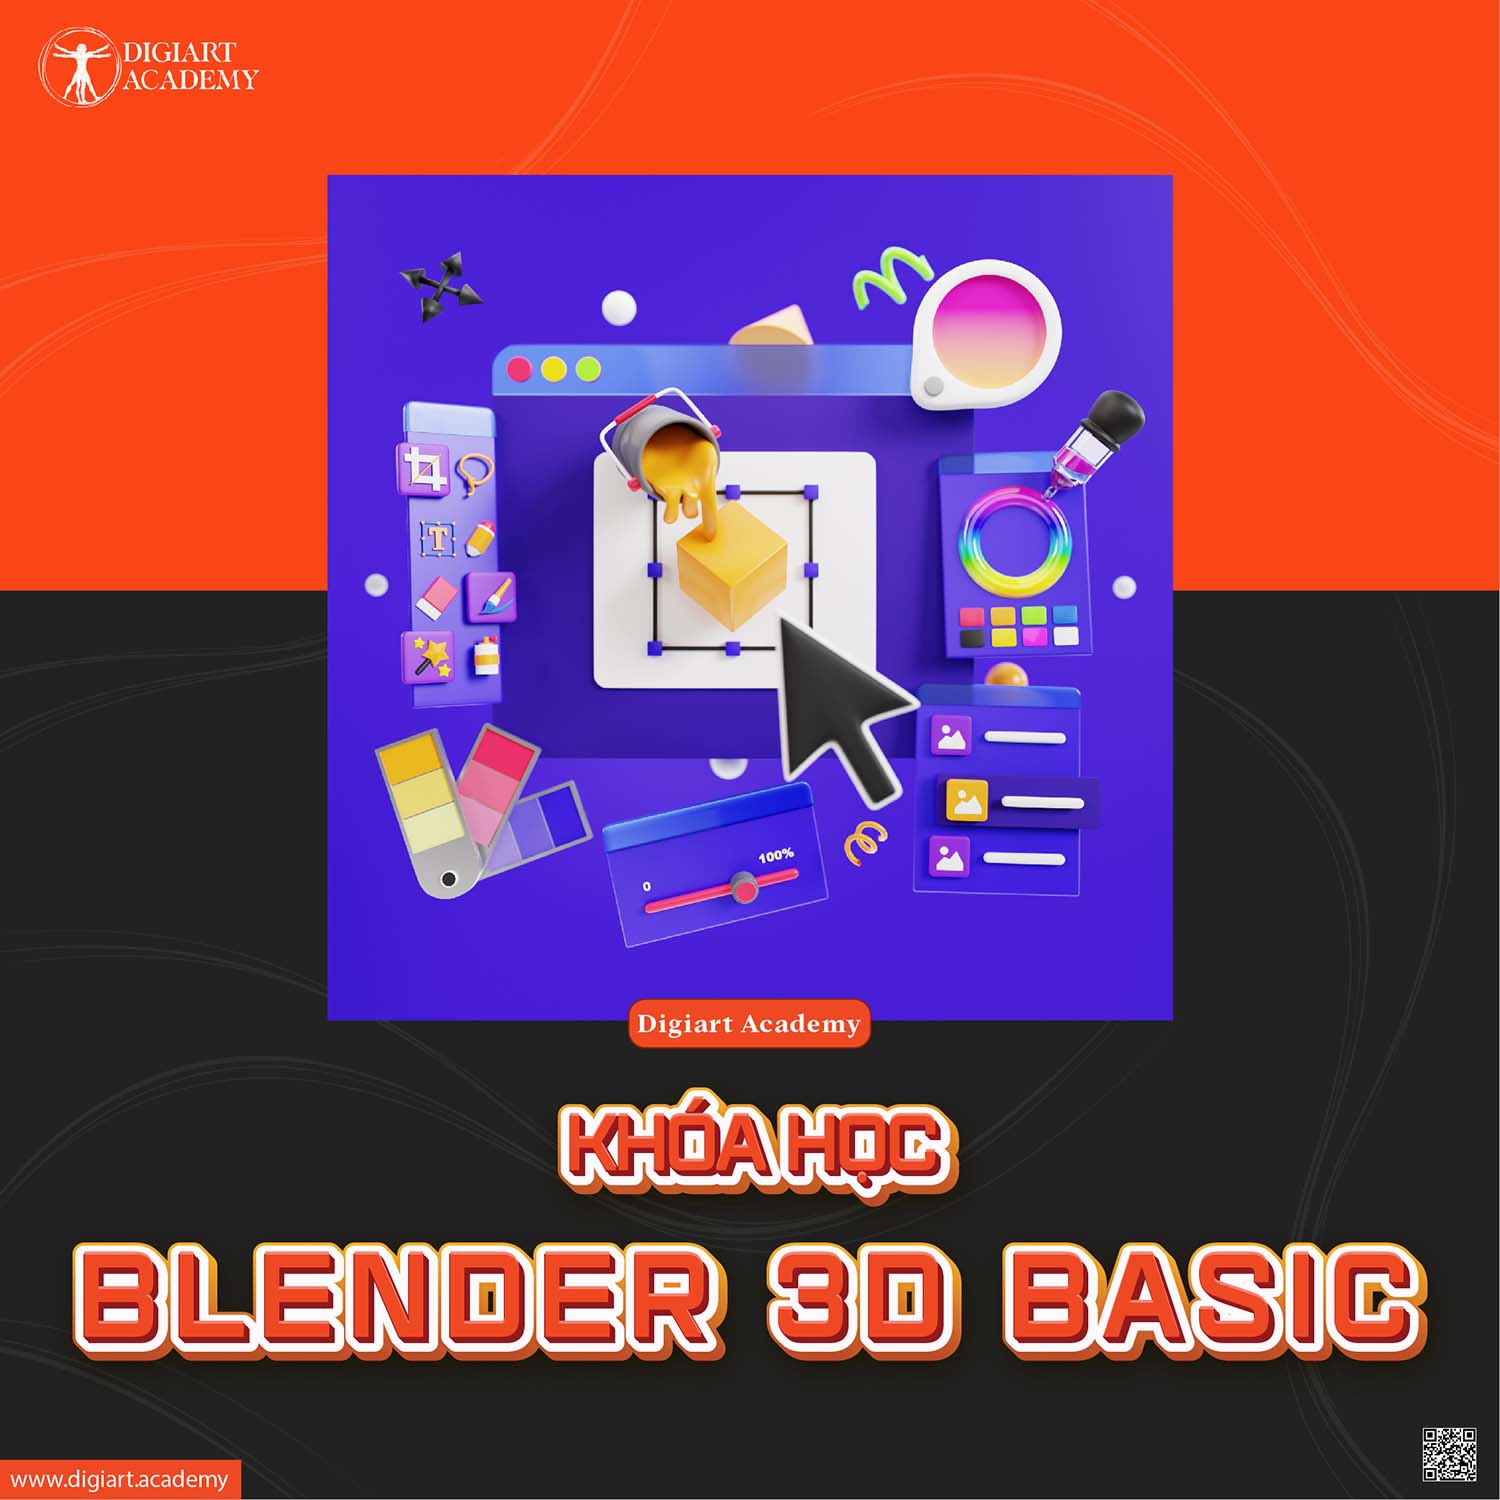 Blender là phần mềm đồ họa 3D tuyệt vời cho các tín đồ nghệ thuật số. Với khả năng tạo ra những hình ảnh động và thời gian thực đẹp mắt, Blender thực sự là một công cụ không thể thiếu cho các nghệ sĩ đồ họa. Hãy xem hình ảnh liên quan đến Blender để khám phá thêm những điều tuyệt vời mà nó có thể tạo ra.